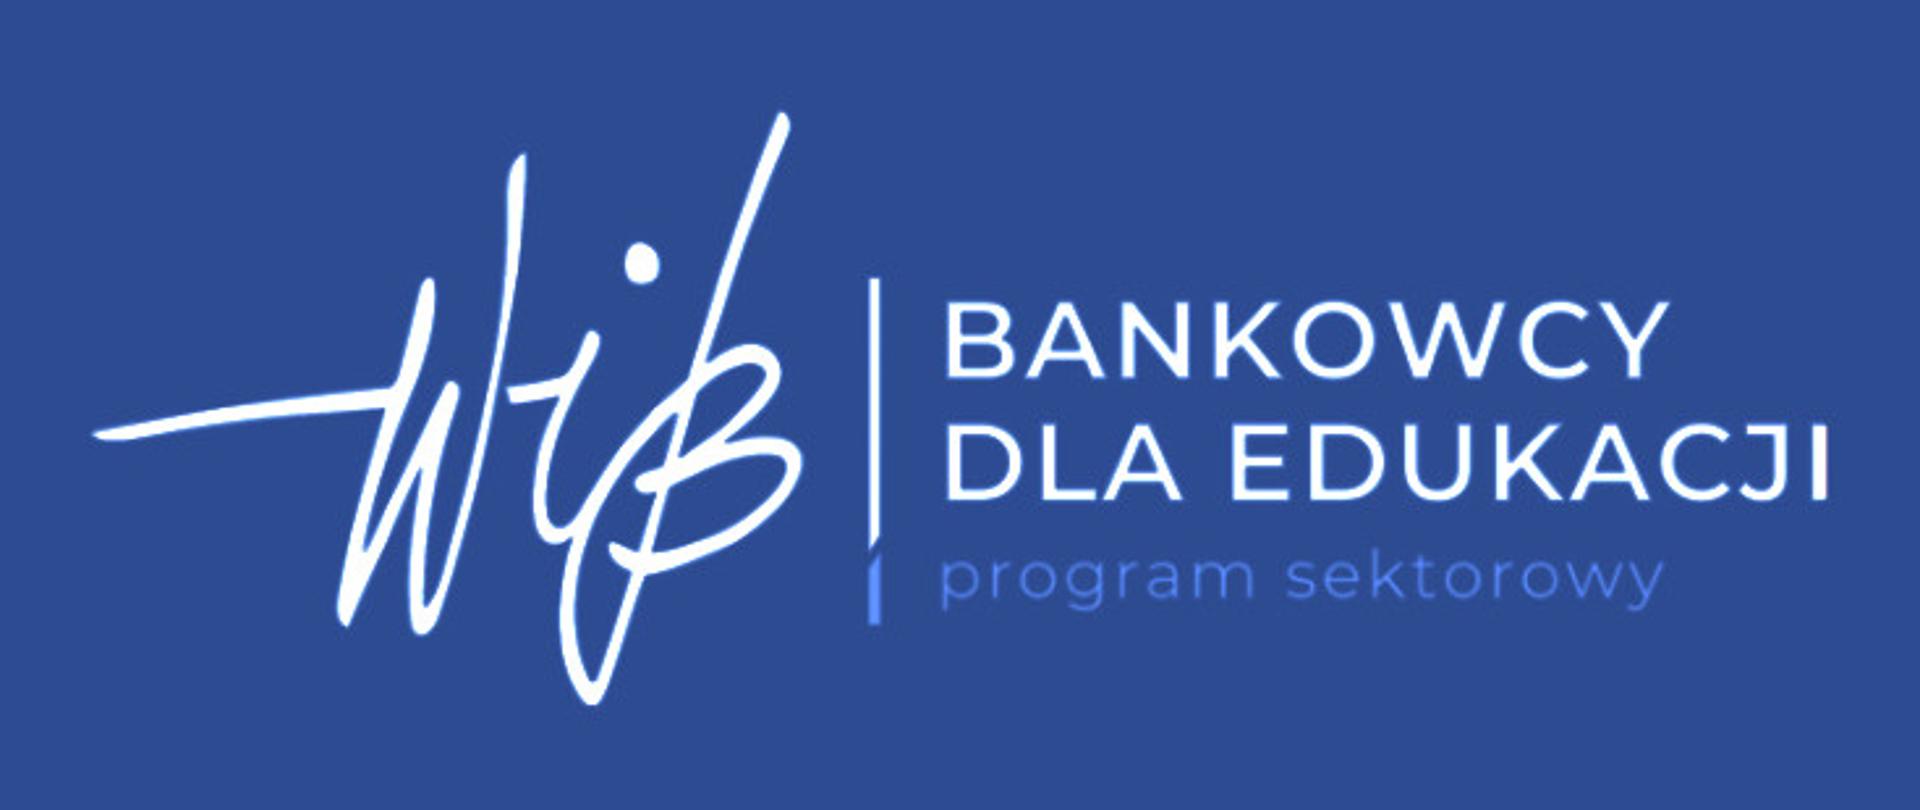 Logo "Bankowcy dla edukacji"